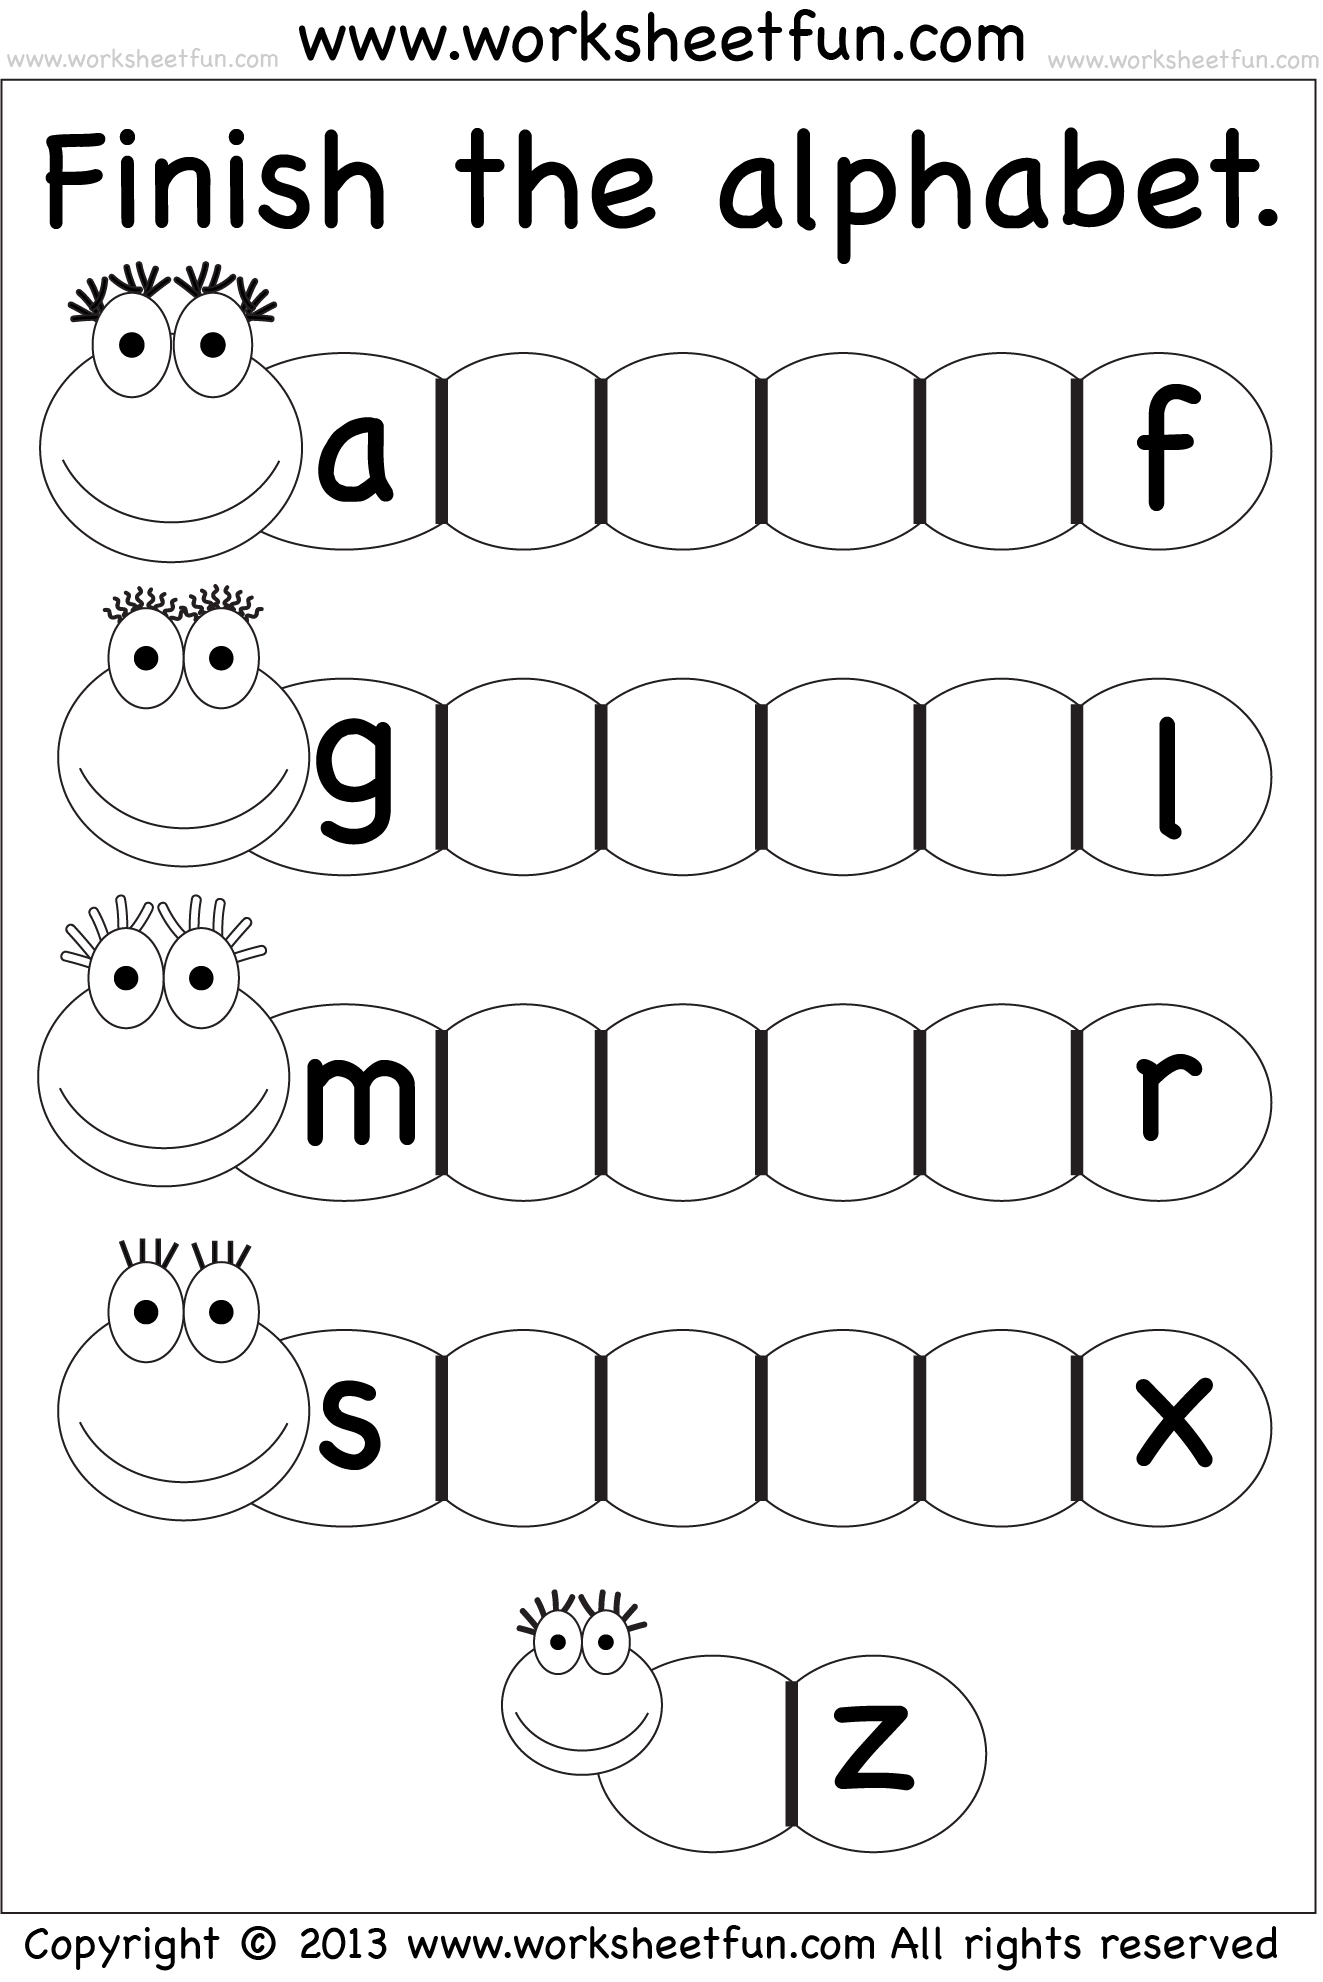 worksheets-on-alphabets